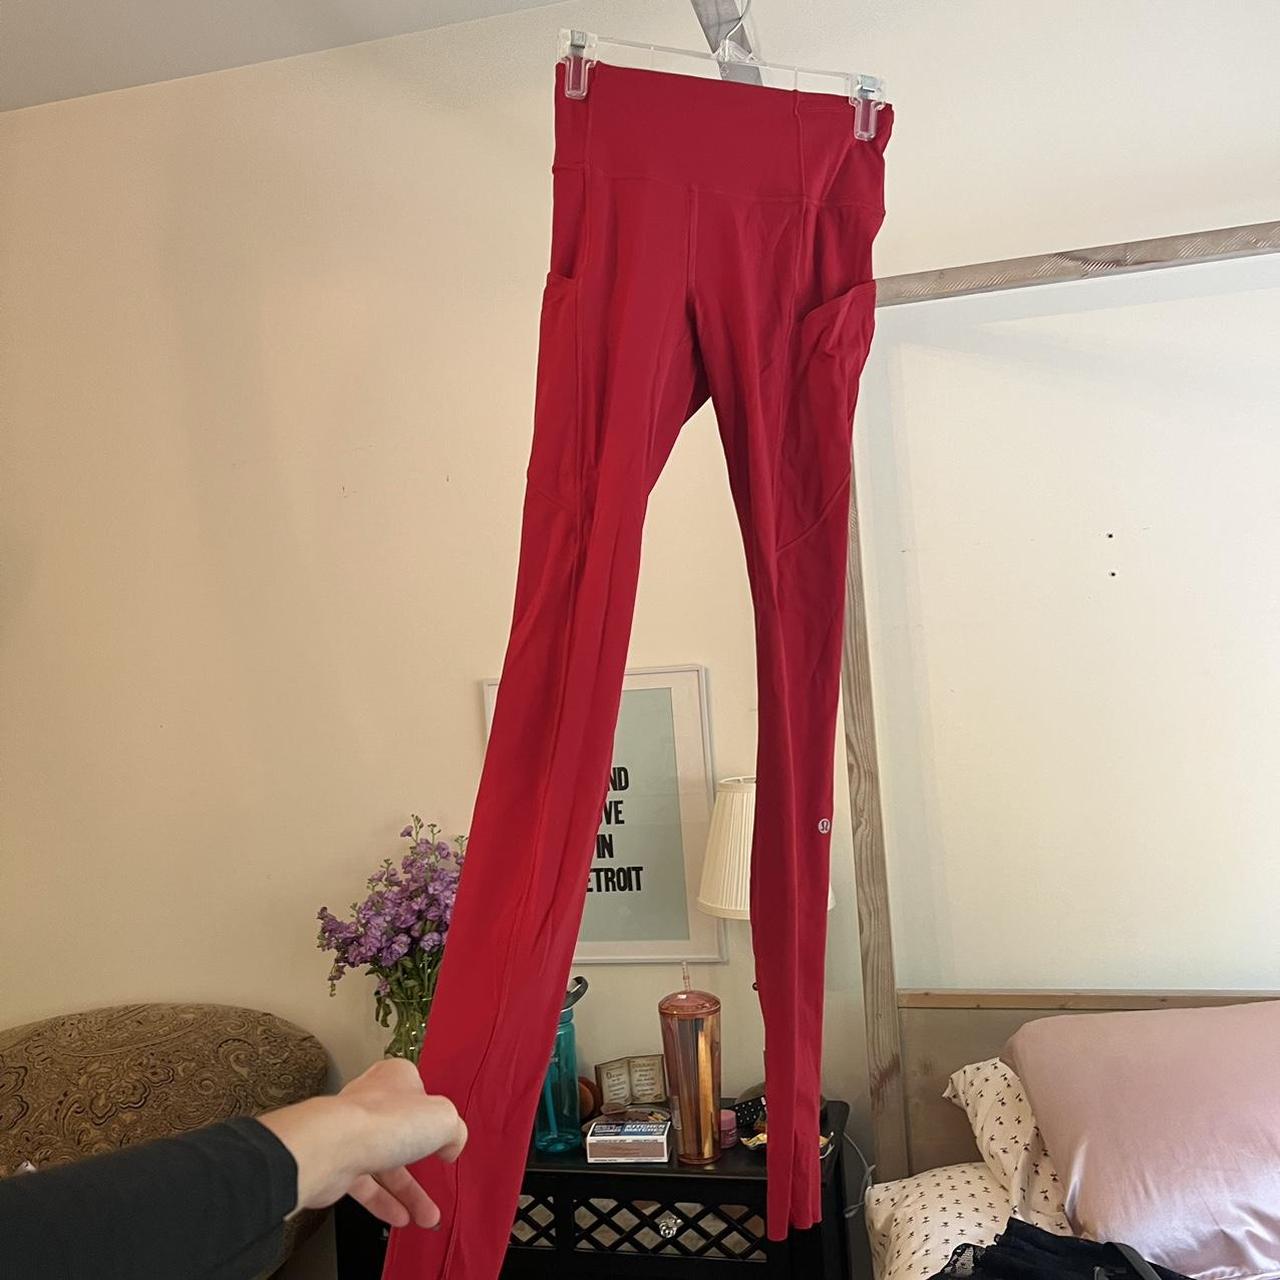 Lulu lemon red leggings. These leggings have - Depop